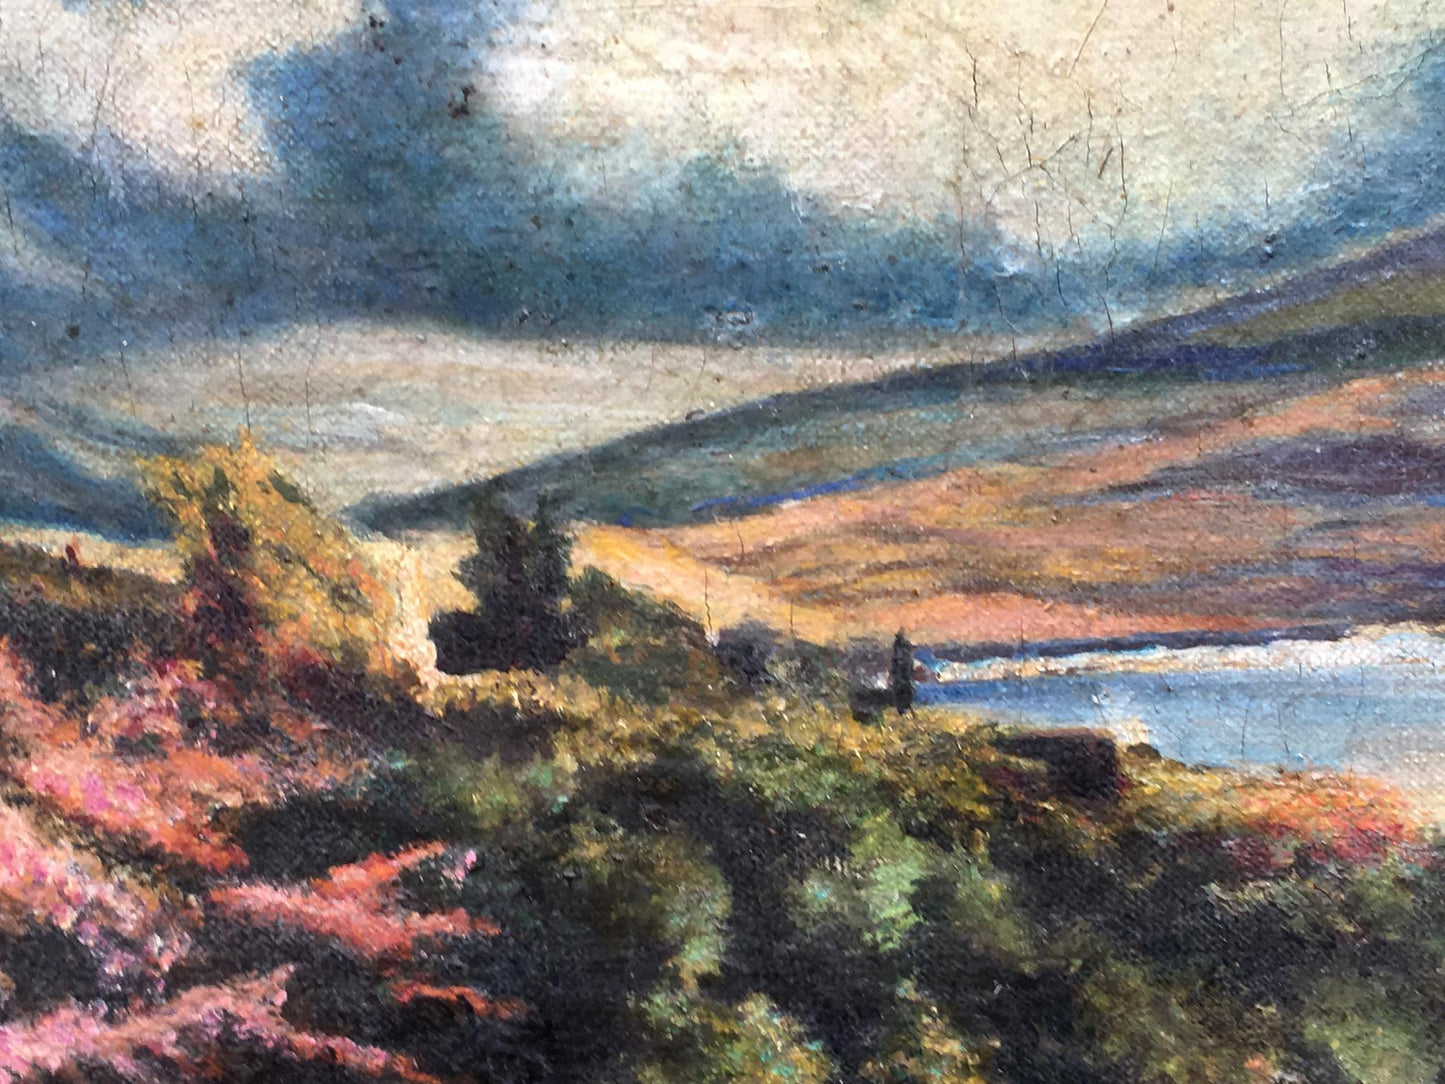 Oil painting Crimean landscape Panorin E.